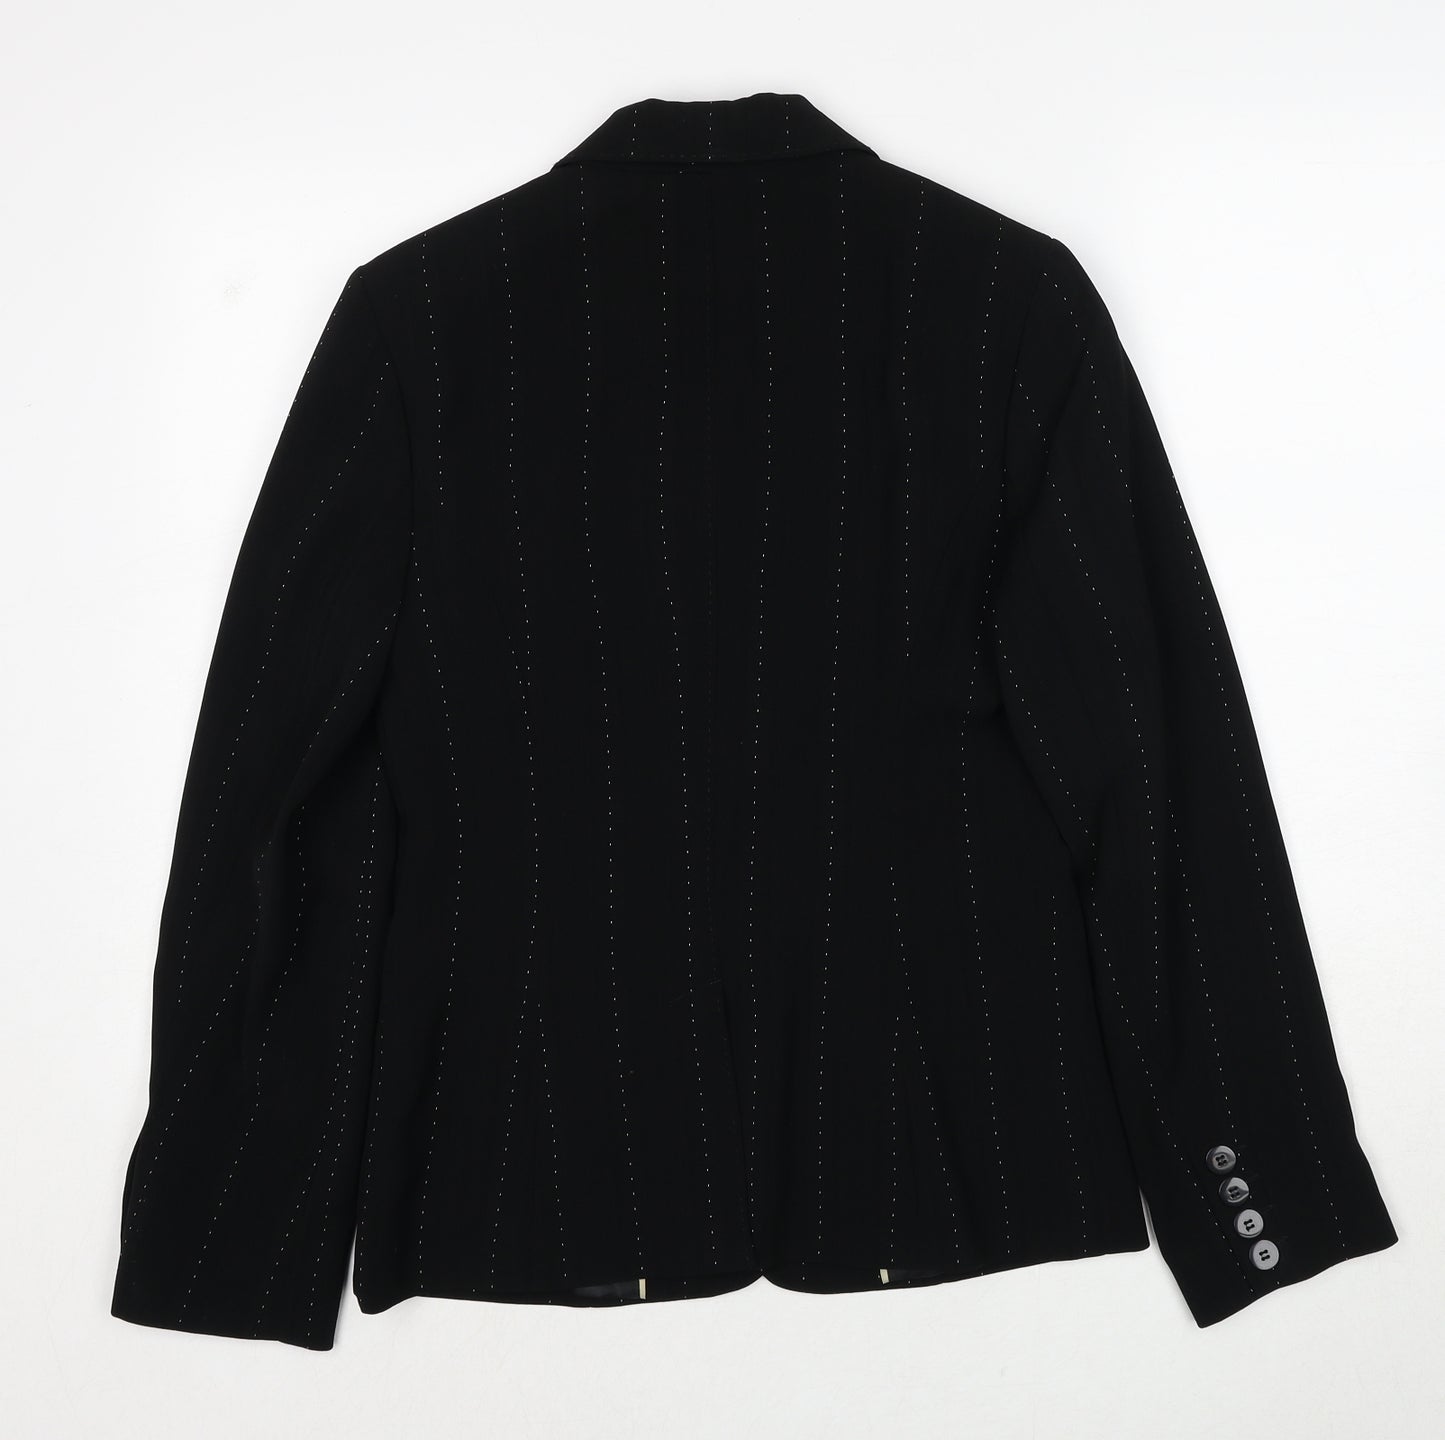 NEXT Womens Black Geometric Polyester Jacket Blazer Size 8